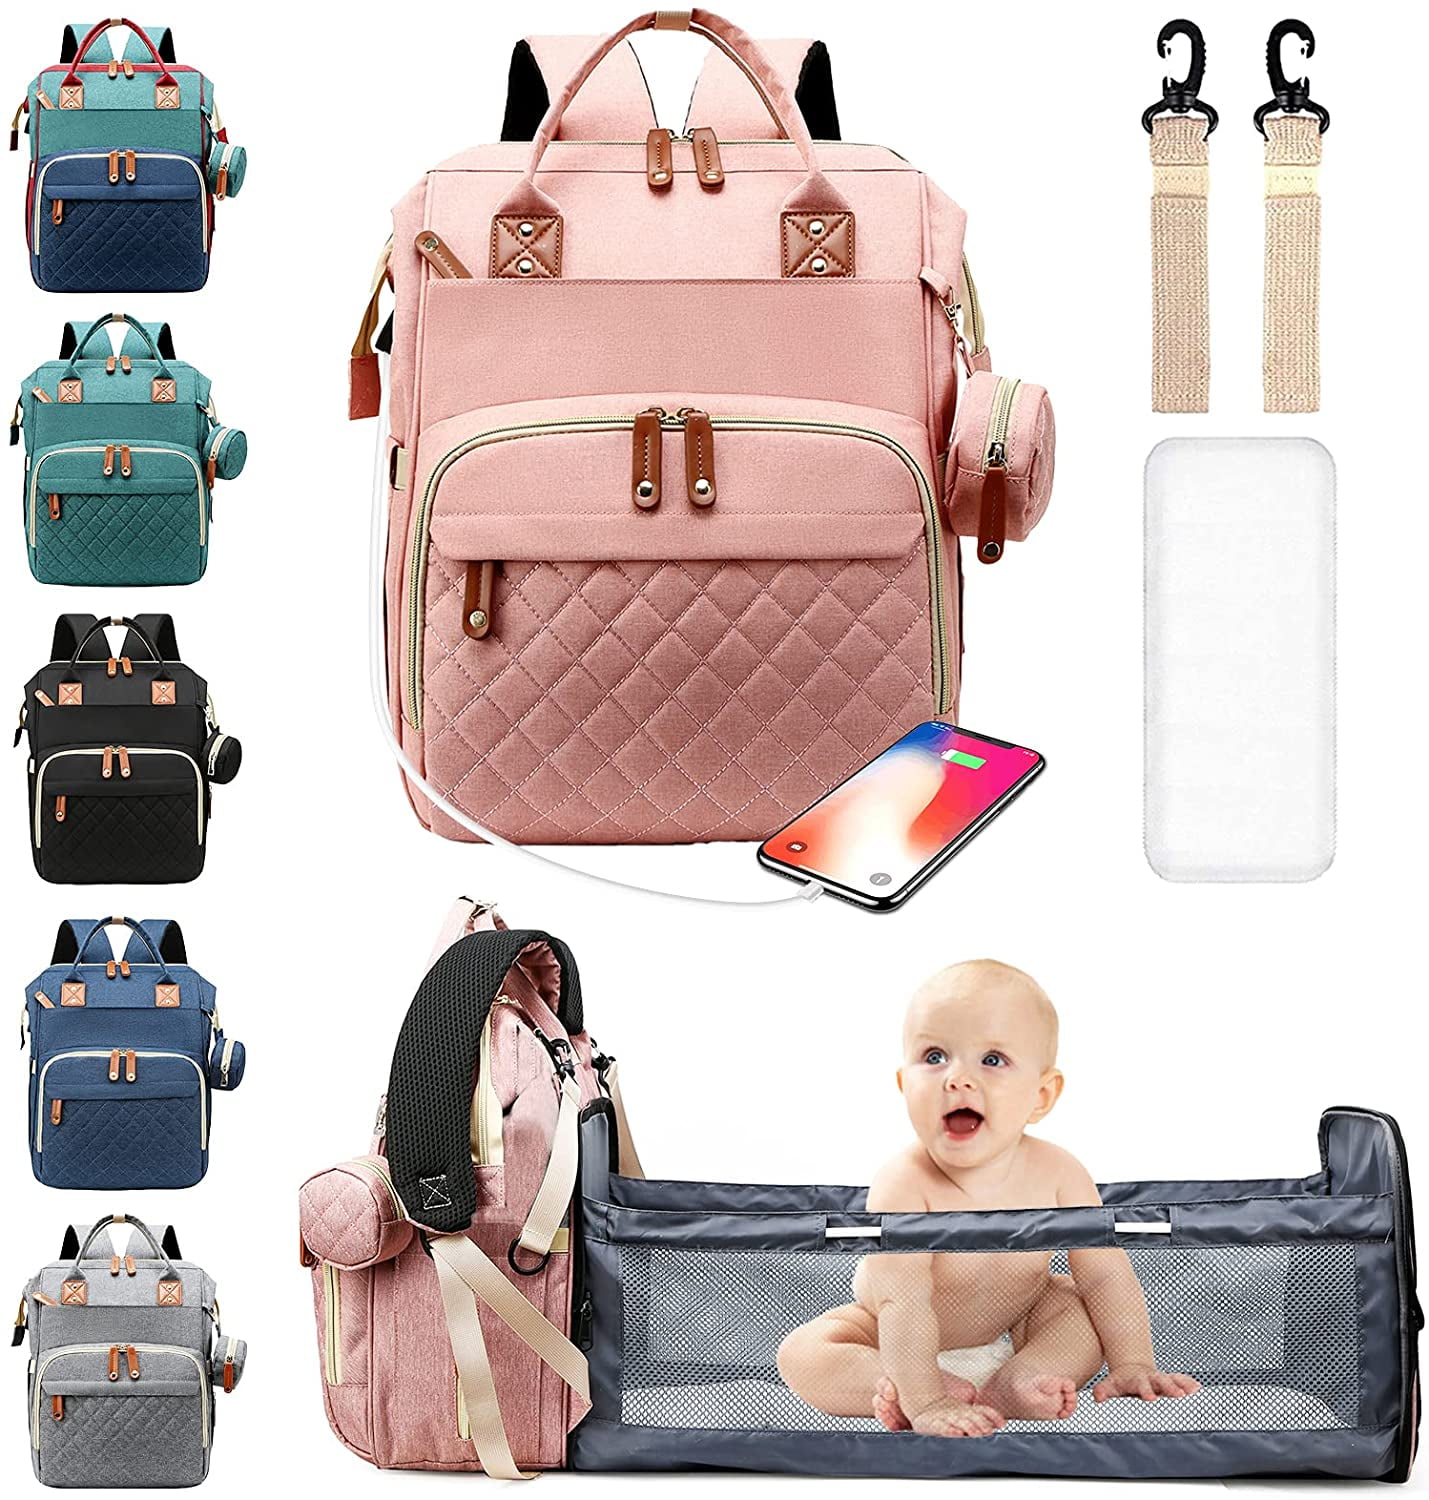 Petunia Pickle Bottom Disney Princess Diaper Bag | Ace Backpack – EasyTot